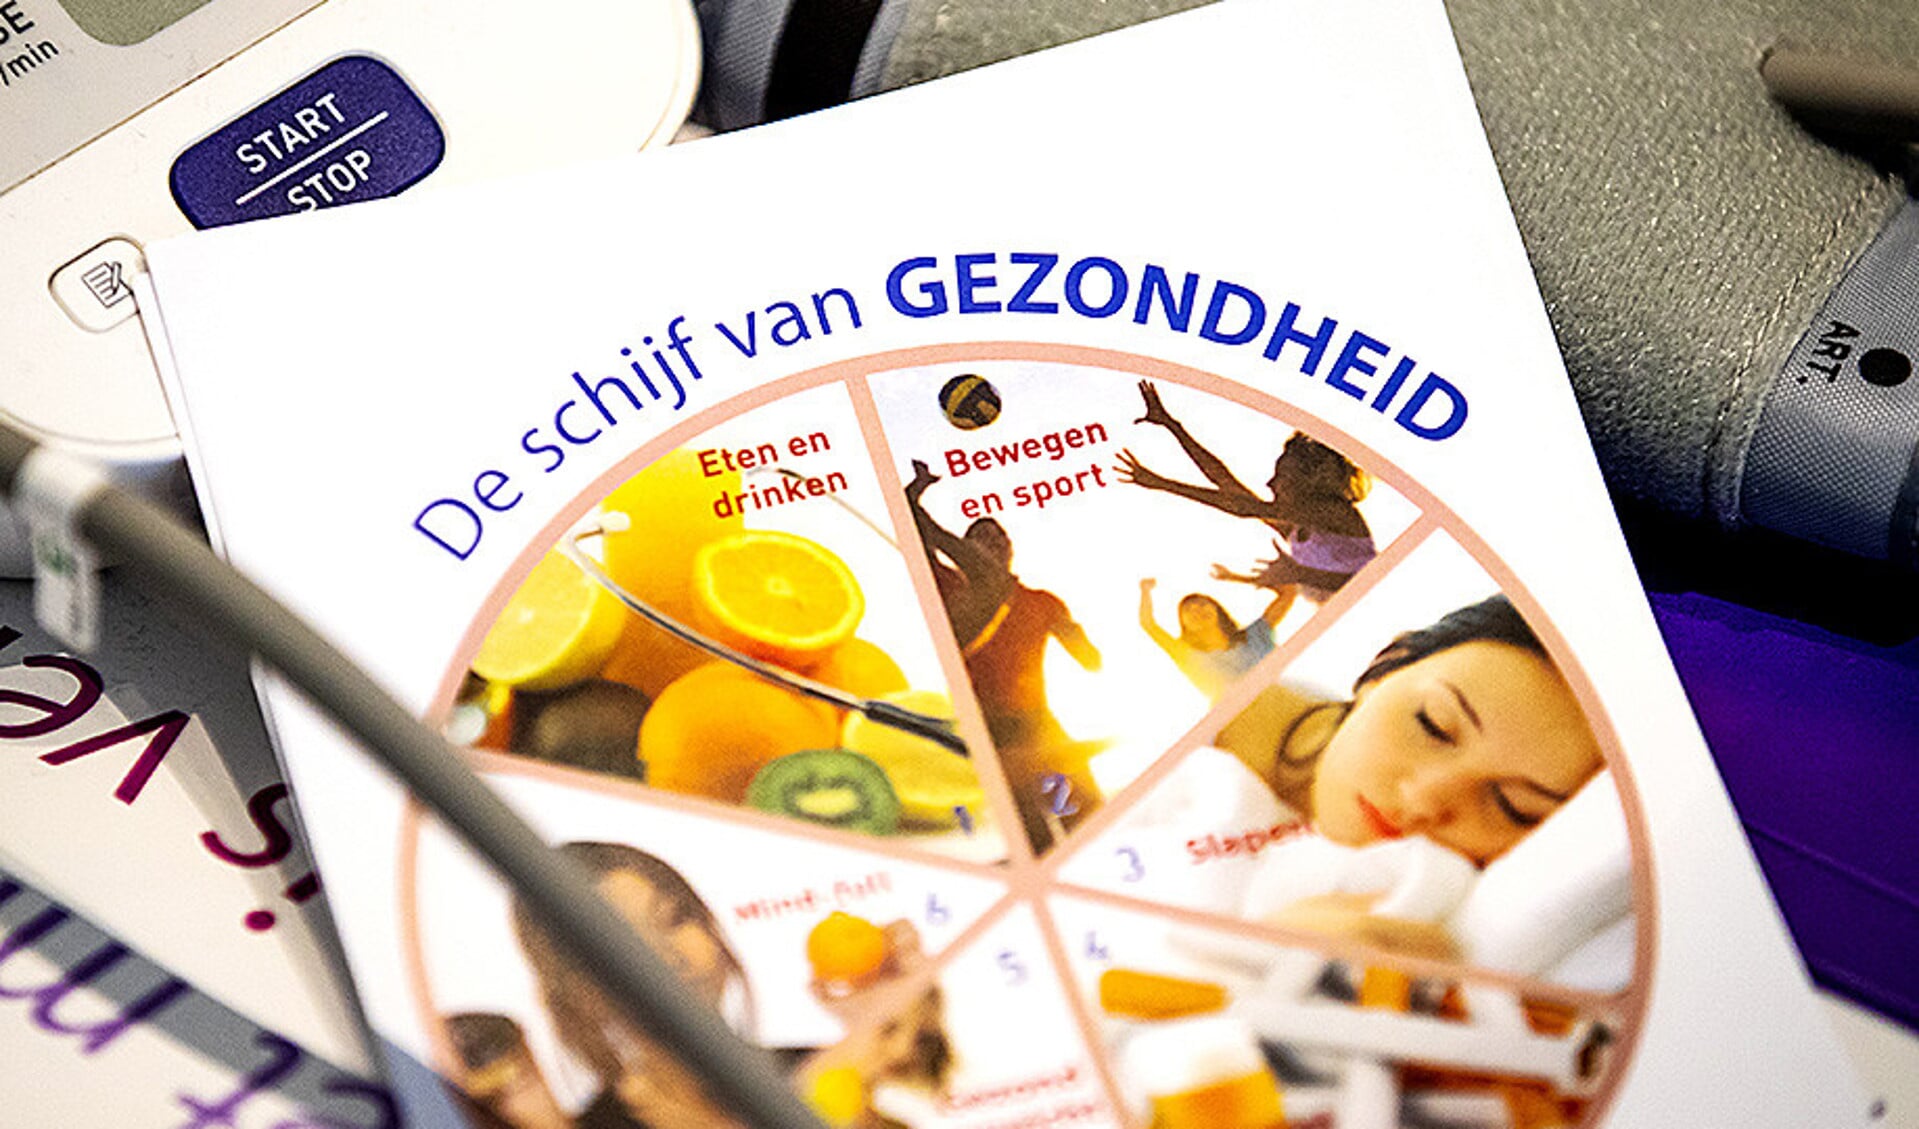 Ook bij het vinden van oplossingen voor obesitas helpt Europese samenwerking. Op de foto: Brochures over afvallen bij een diëtistenpraktijk.